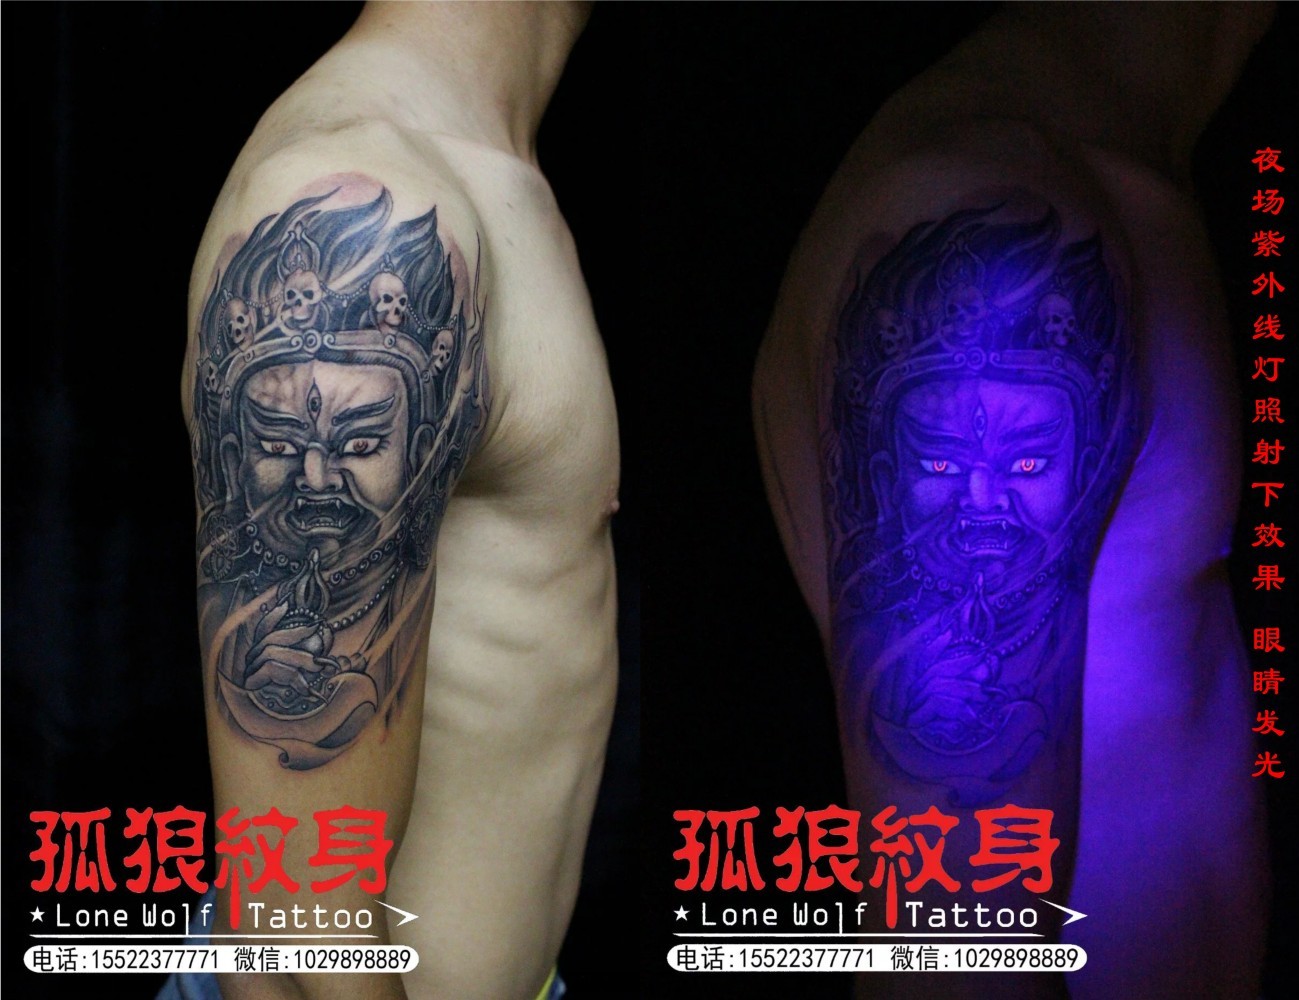 大威德金刚纹身 宝坻孤狼纹身工作室作品 宝坻纹身 天津纹身 孤狼纹身 大臂纹身